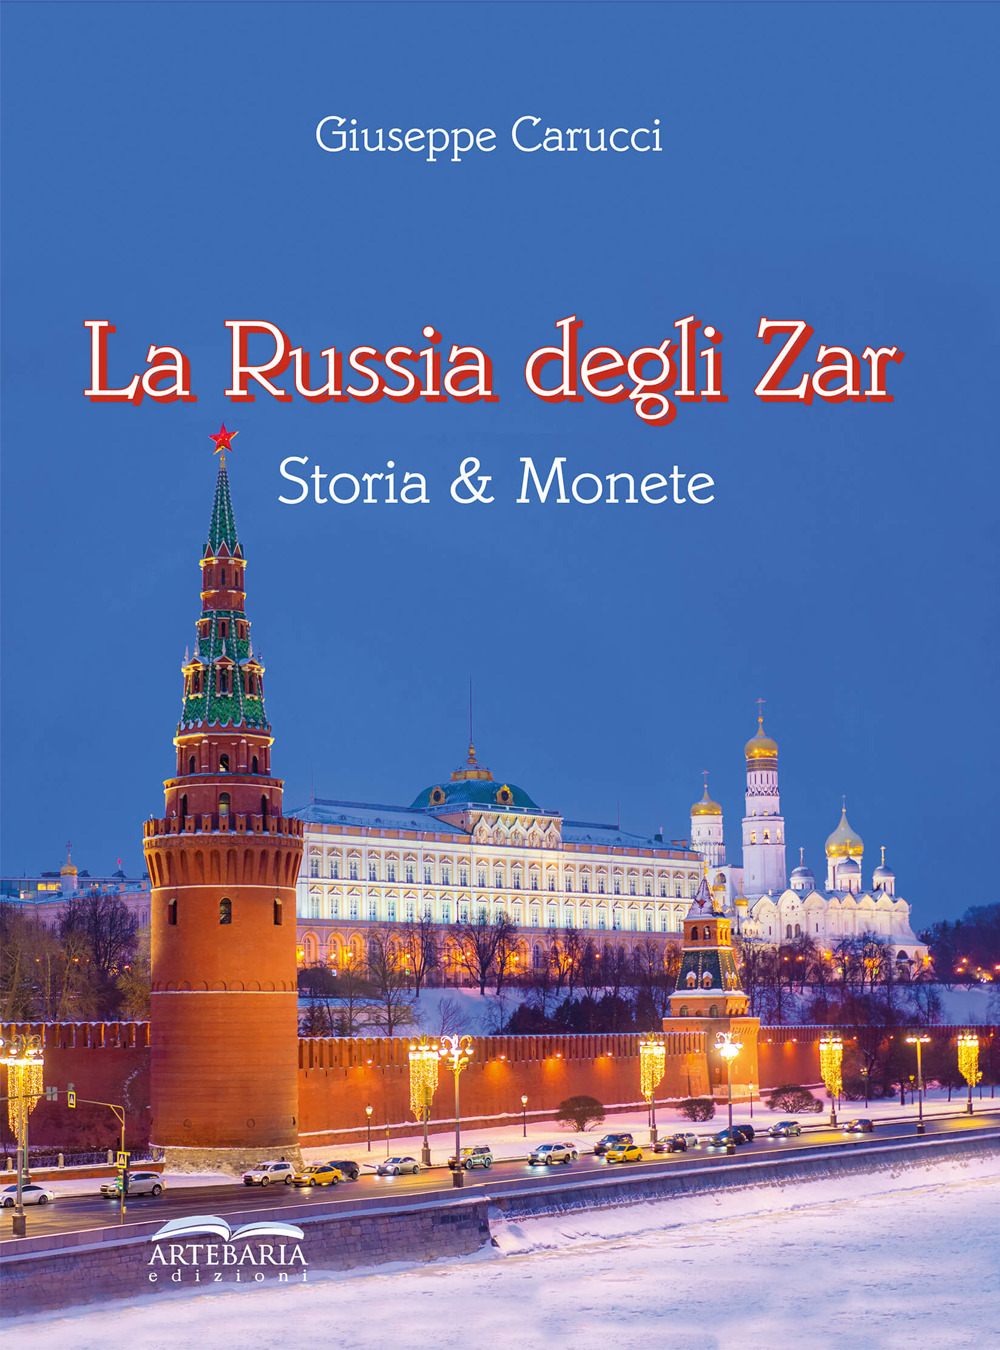 La Russia degli zar. Storia & monete